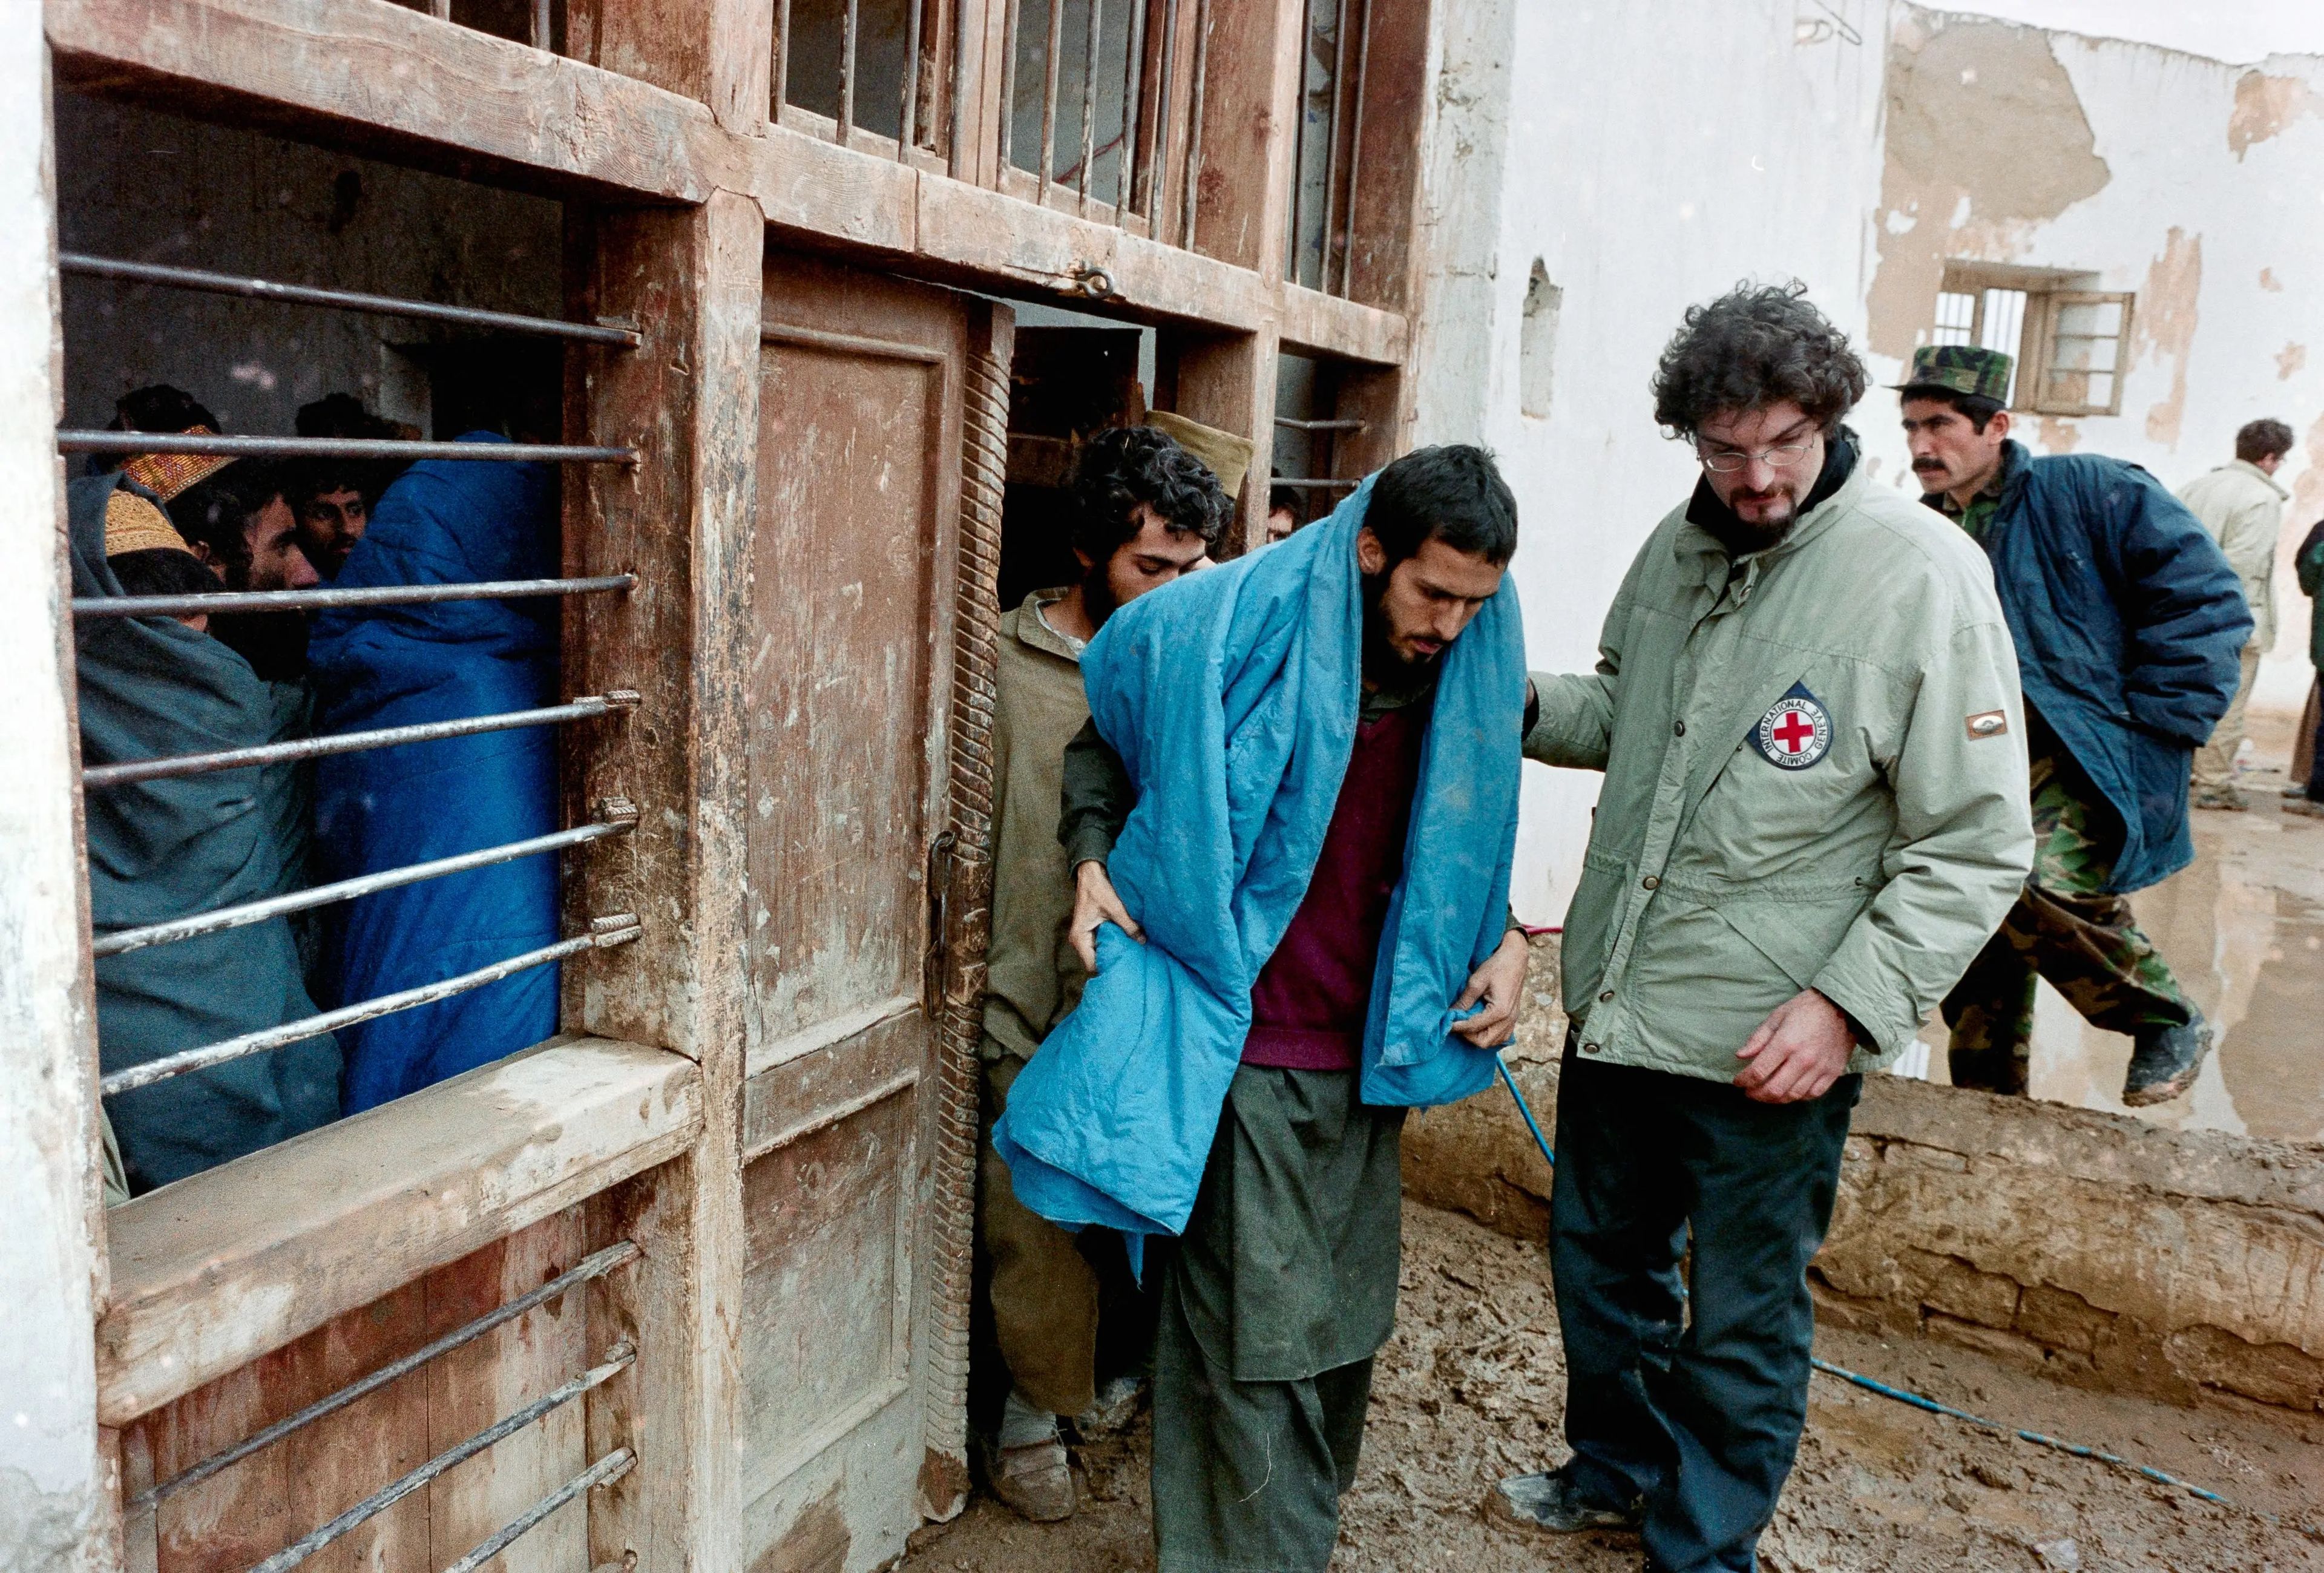 Personal del Comité Internacional de la Cruz Roja visitando a prisioneros talibanes en la prisión de Sheberghan en diciembre de 2001.